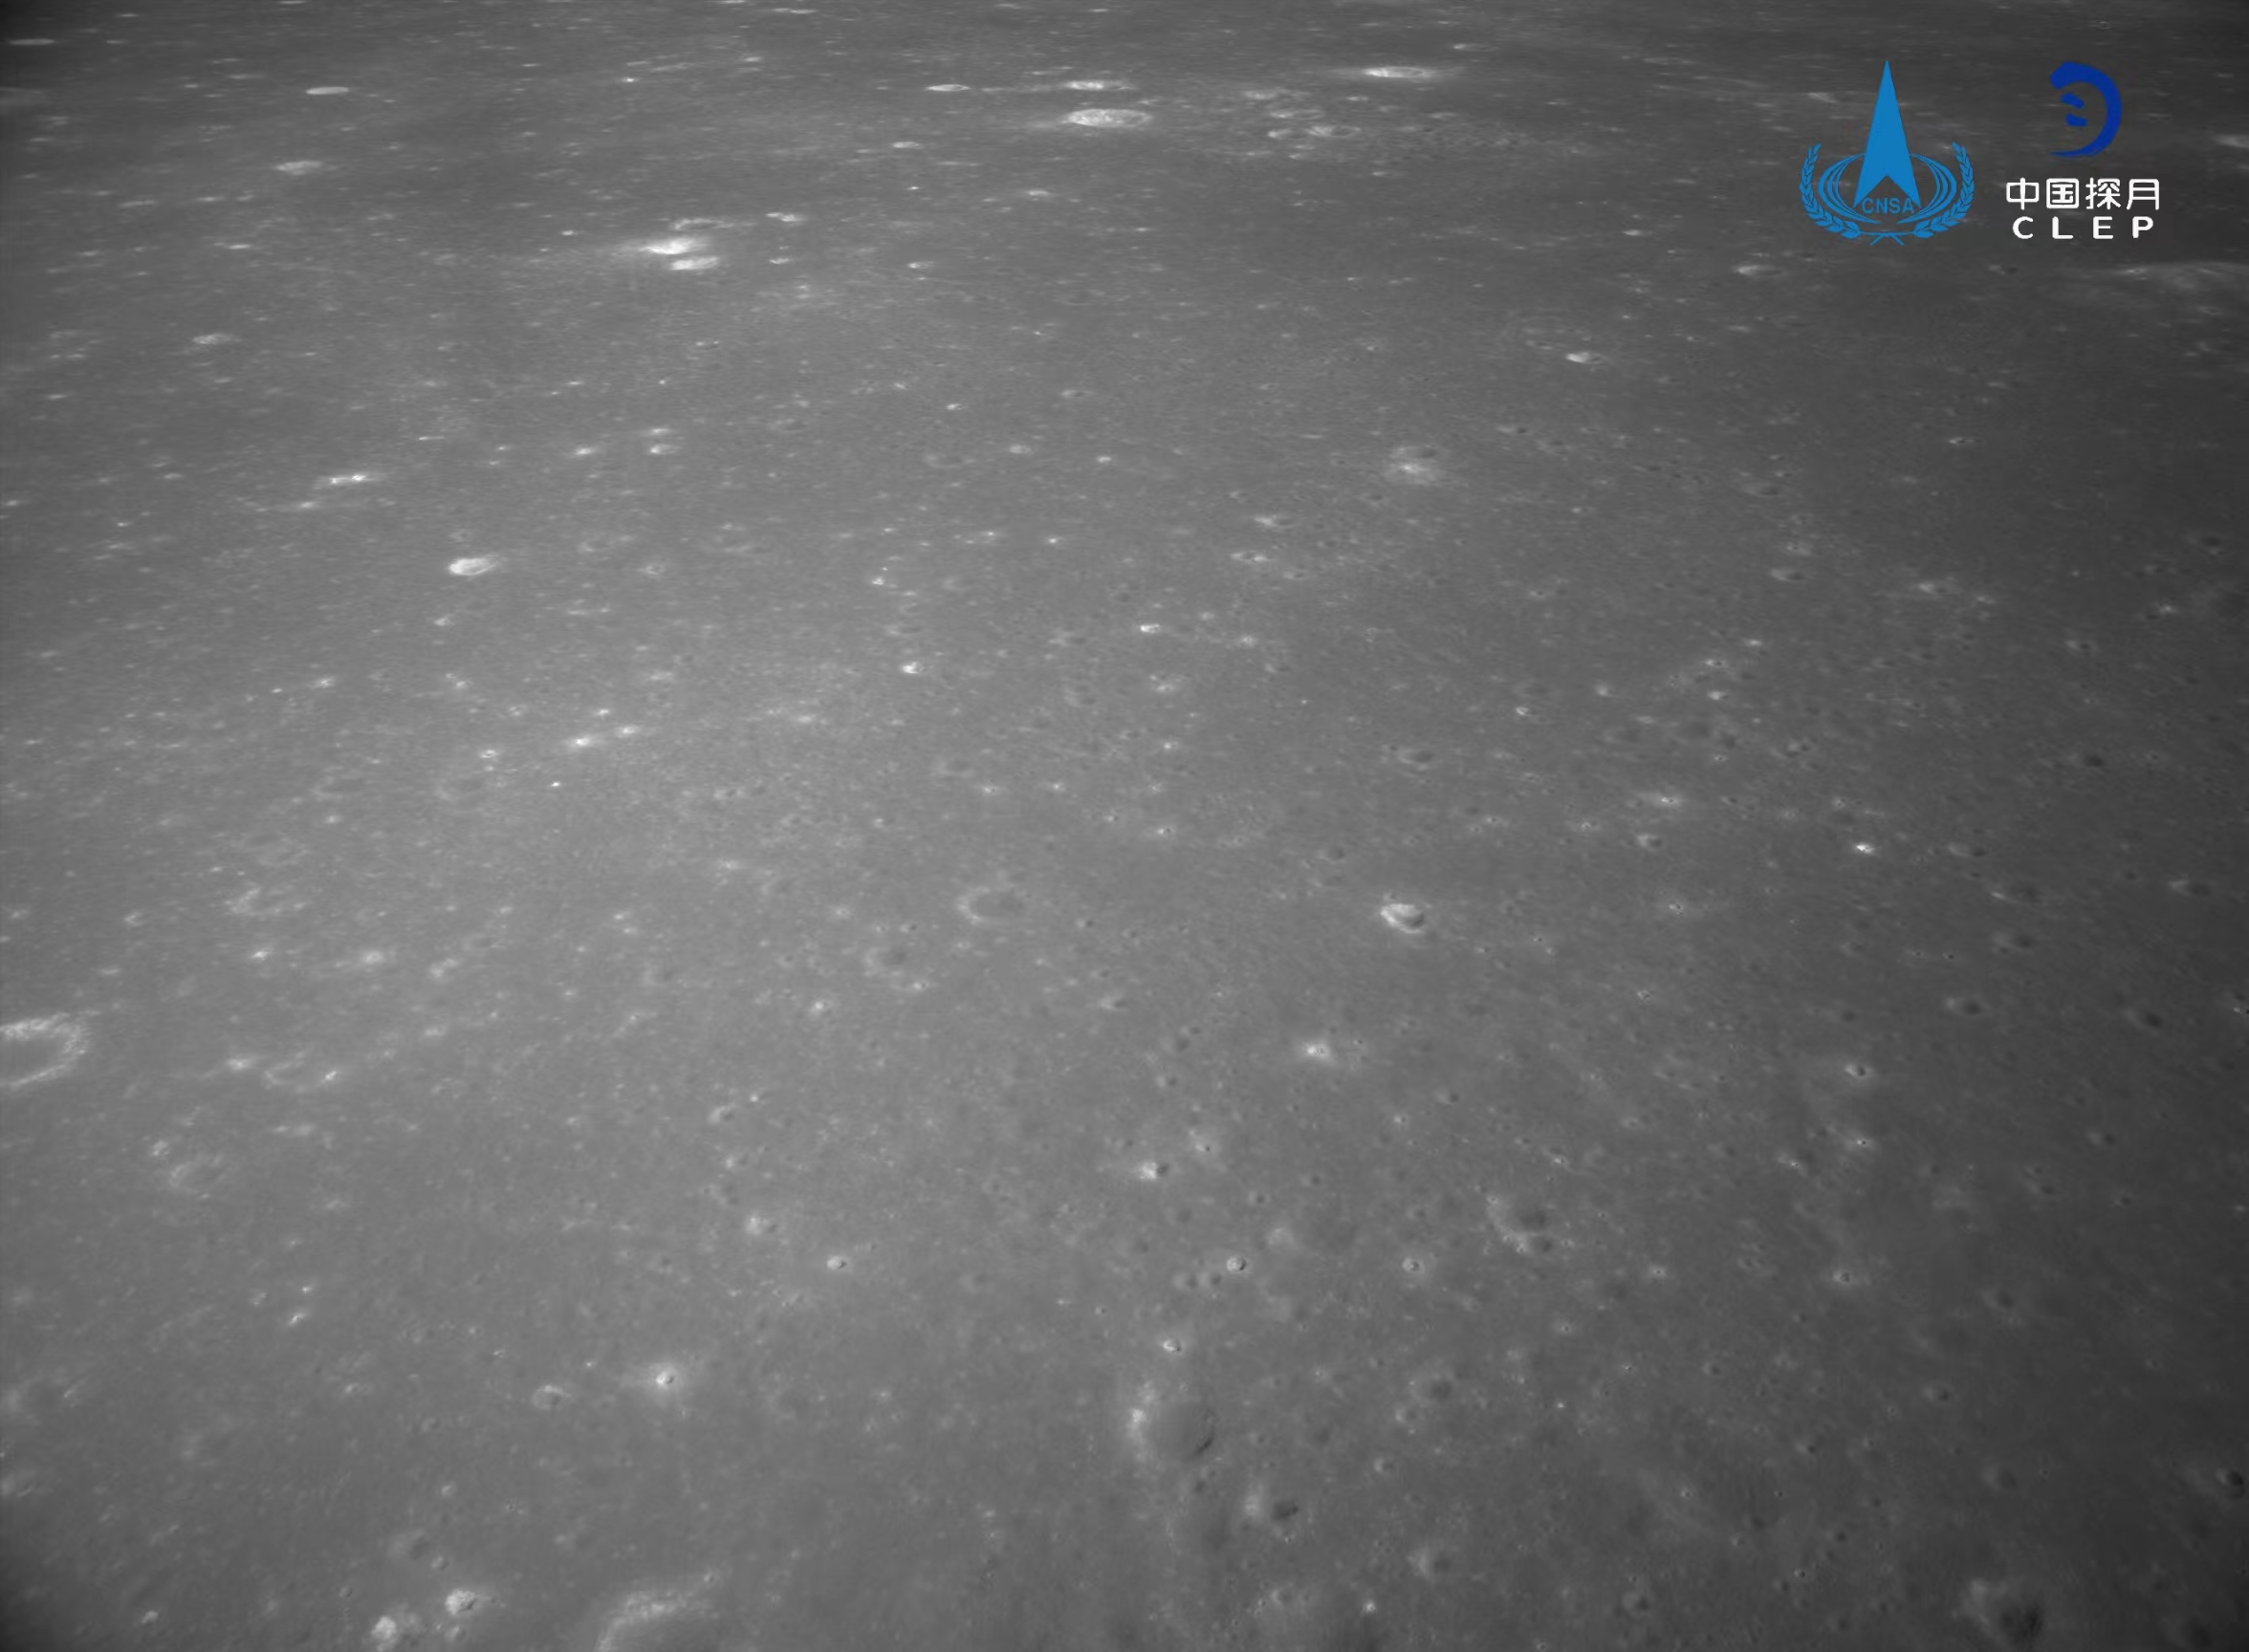 该图由降落相机在降落过程中拍摄，图像显示拍摄的月背区域分布有大量亮色环形坑。